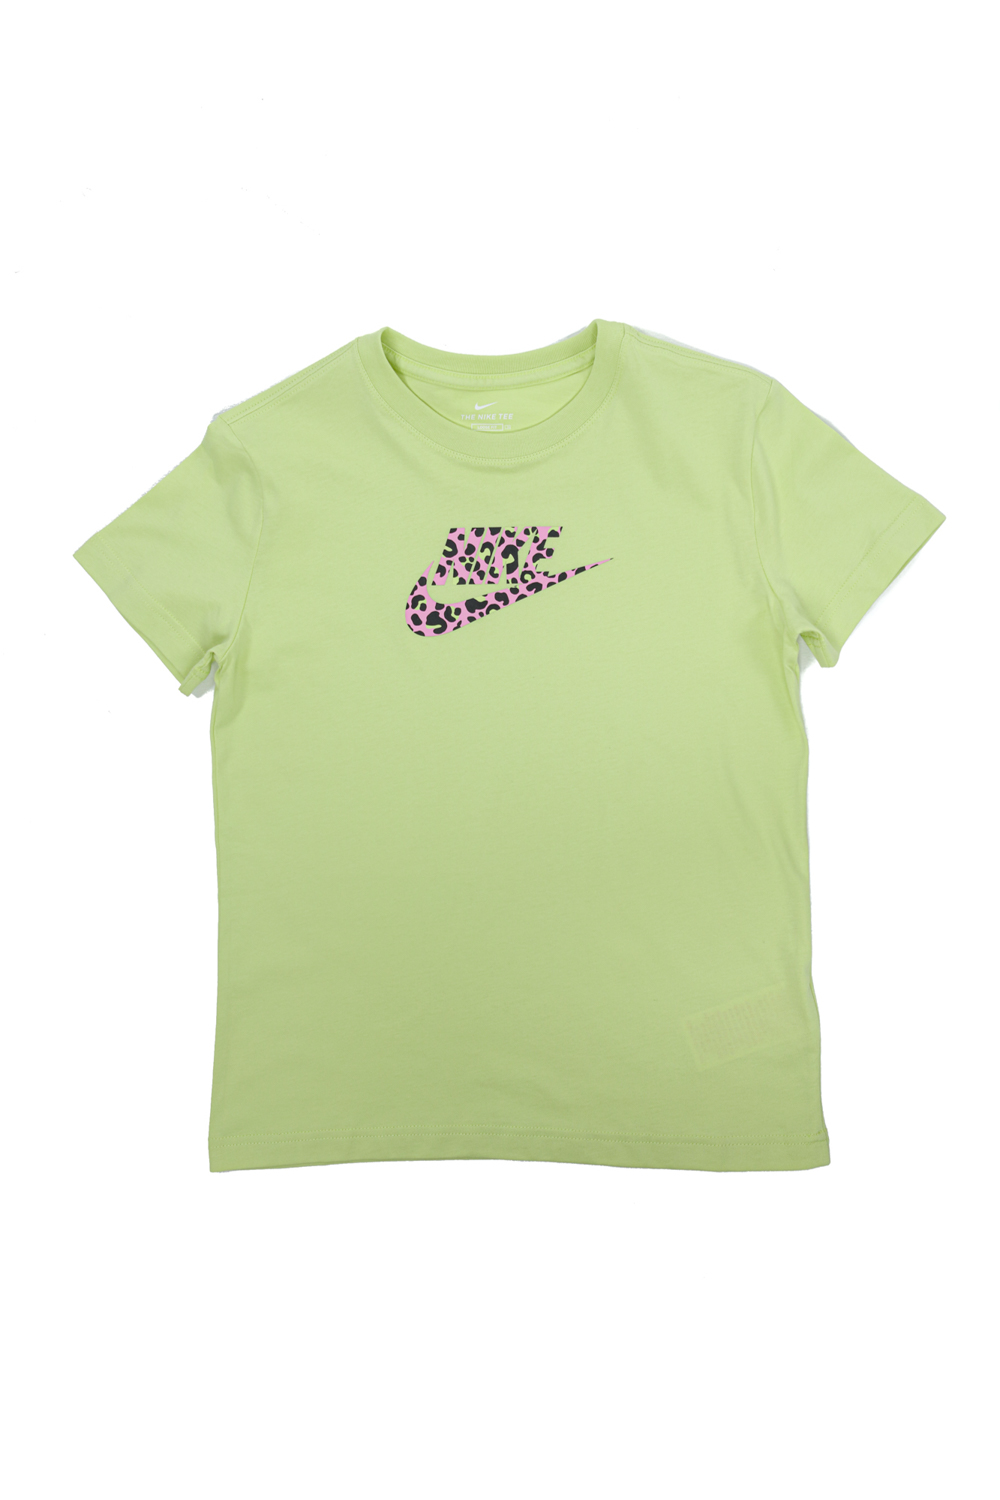 Παιδικά/Girls/Ρούχα/Αθλητικά NIKE - Παιδικό αθλητικό t-shirt ΝΙΚΕ NSW TEE BF πράσινο